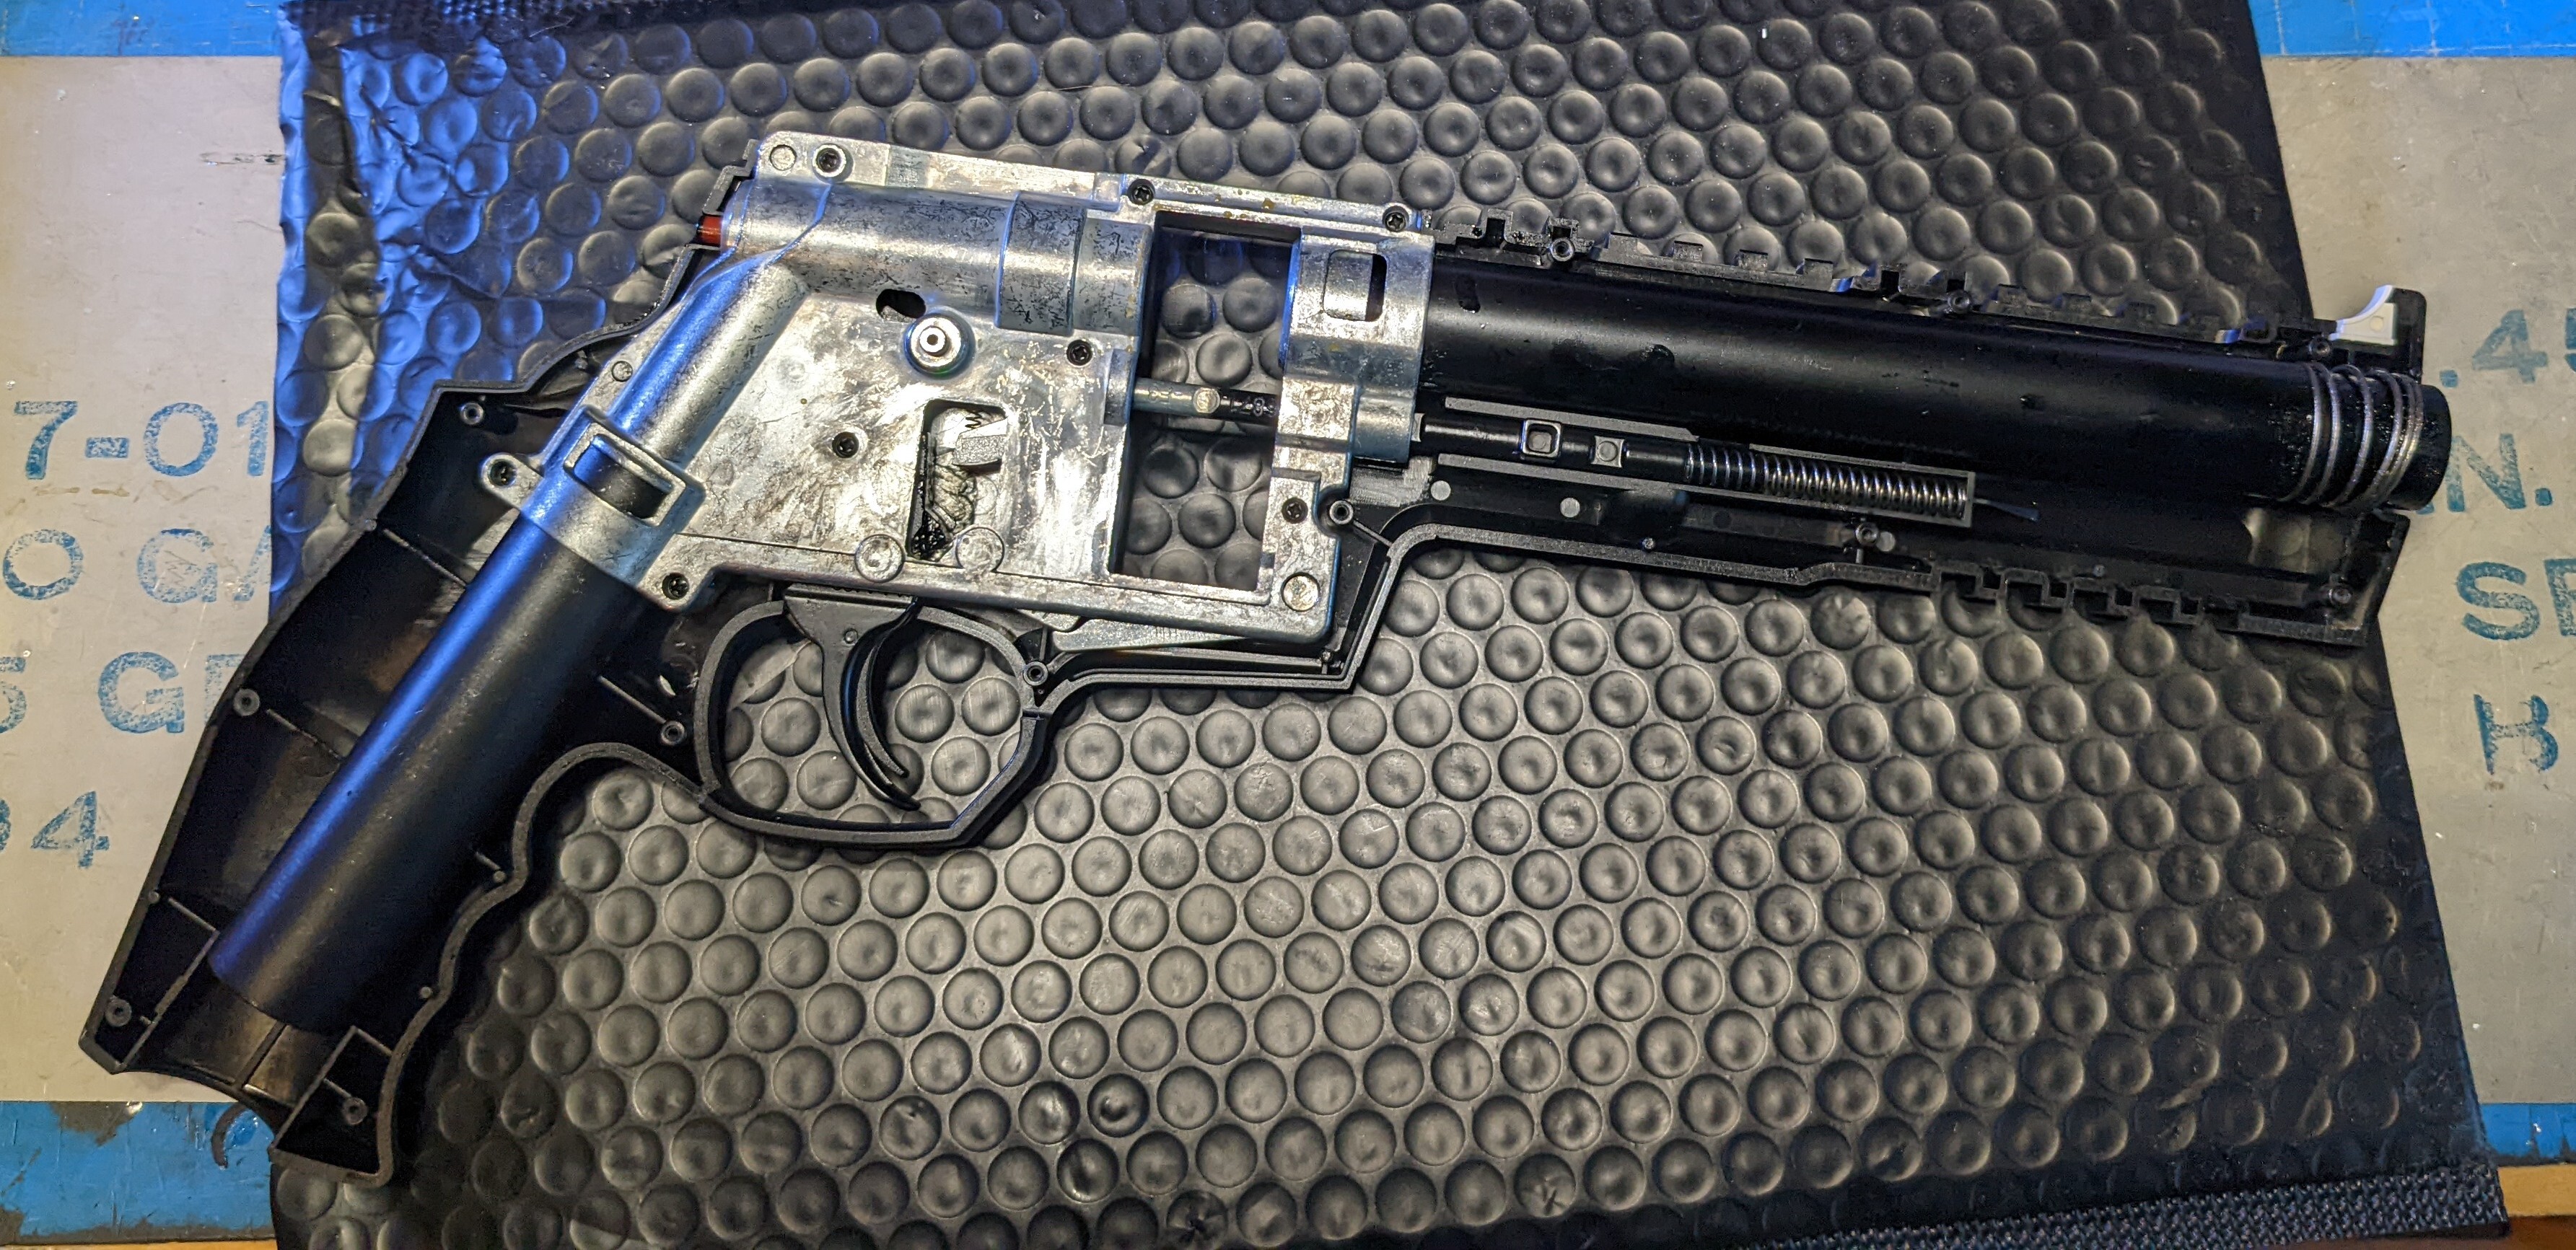 Umarex to make a 68 caliber, 5-shot revolver- HDR-68 